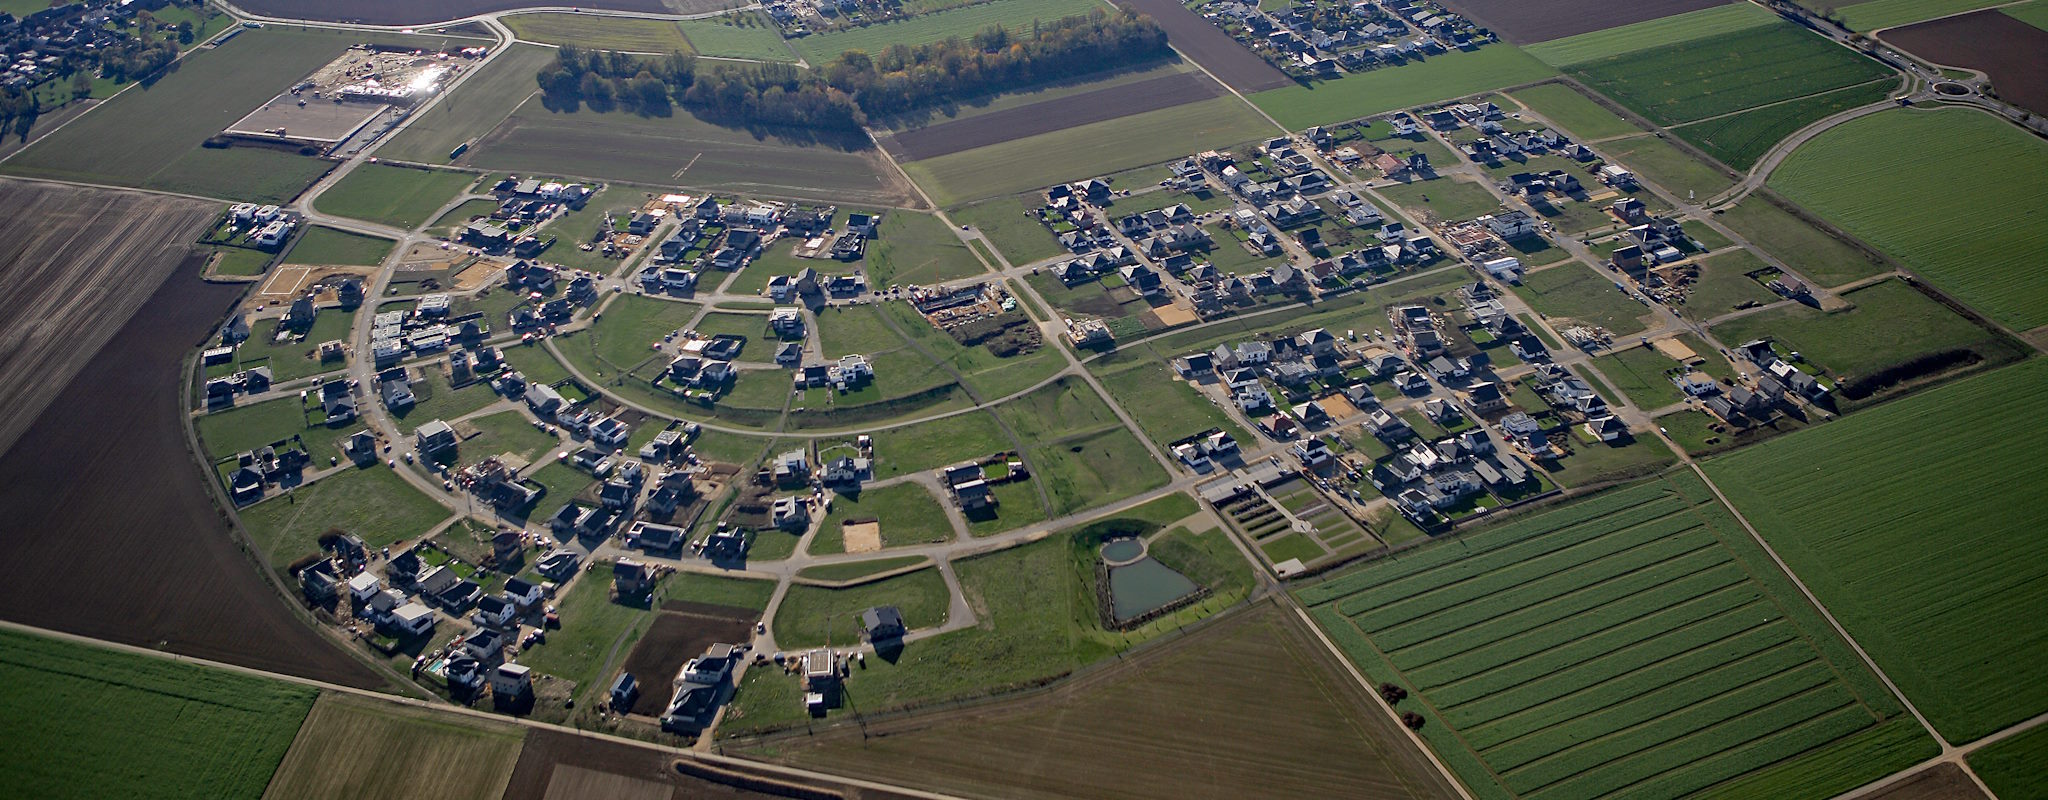 Umsiedlungsstandort Erkelenz Nord (Luftbild)